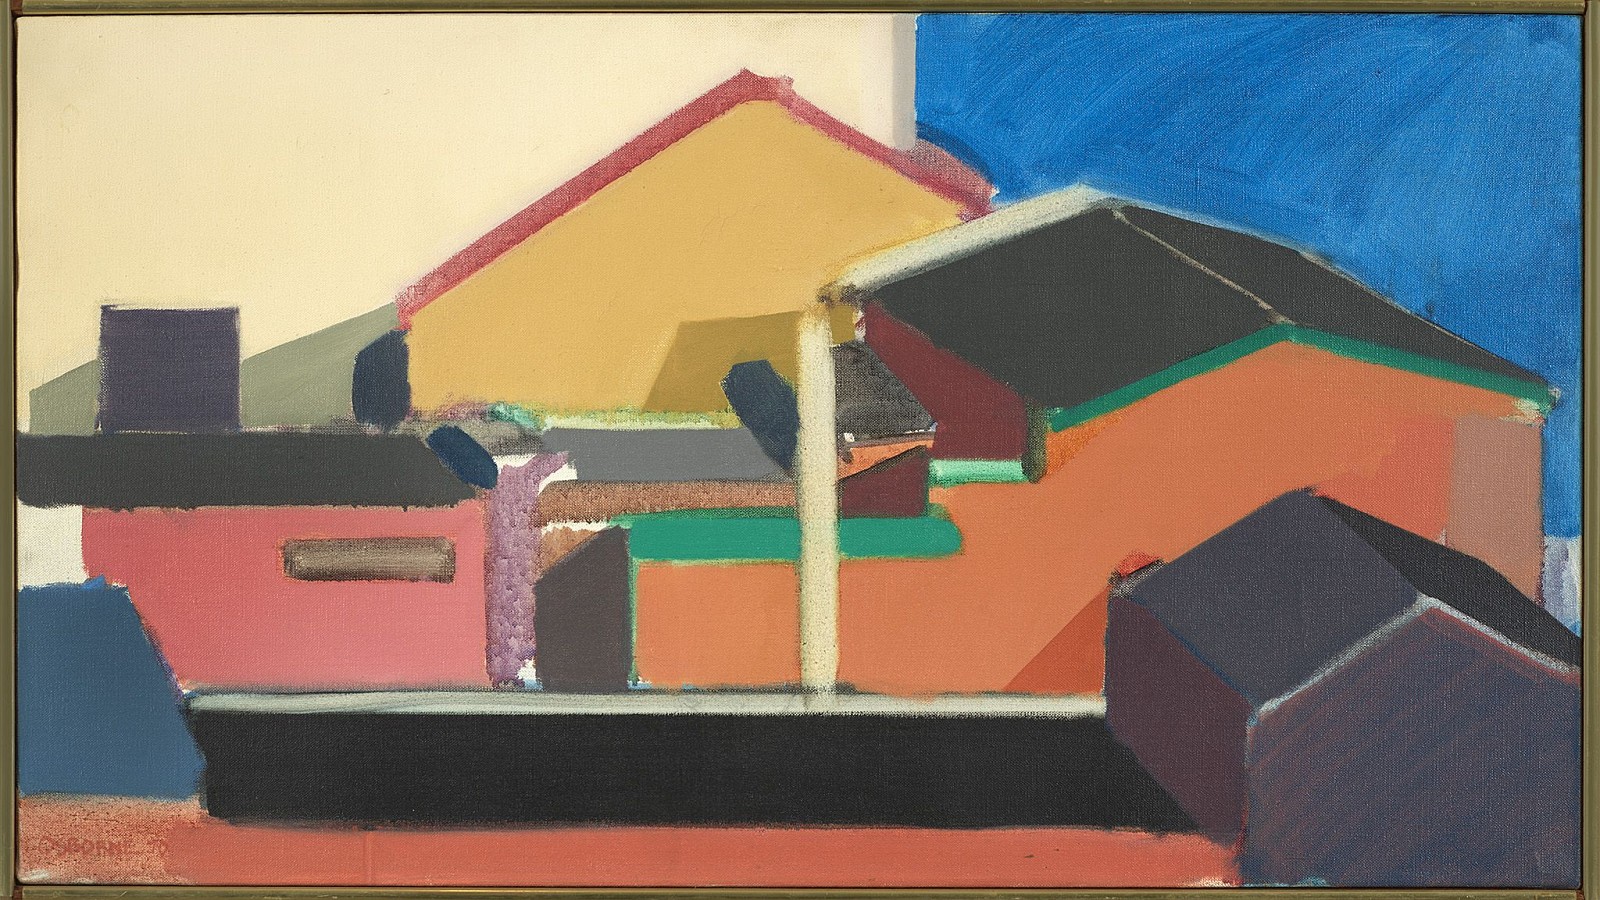 Elizabeth Osborne, Buildings North Window, 1970
Acrylic on canvas, 17 1/4 x 31 1/8 in. (43.8 x 79.1 cm)
OSB-00323